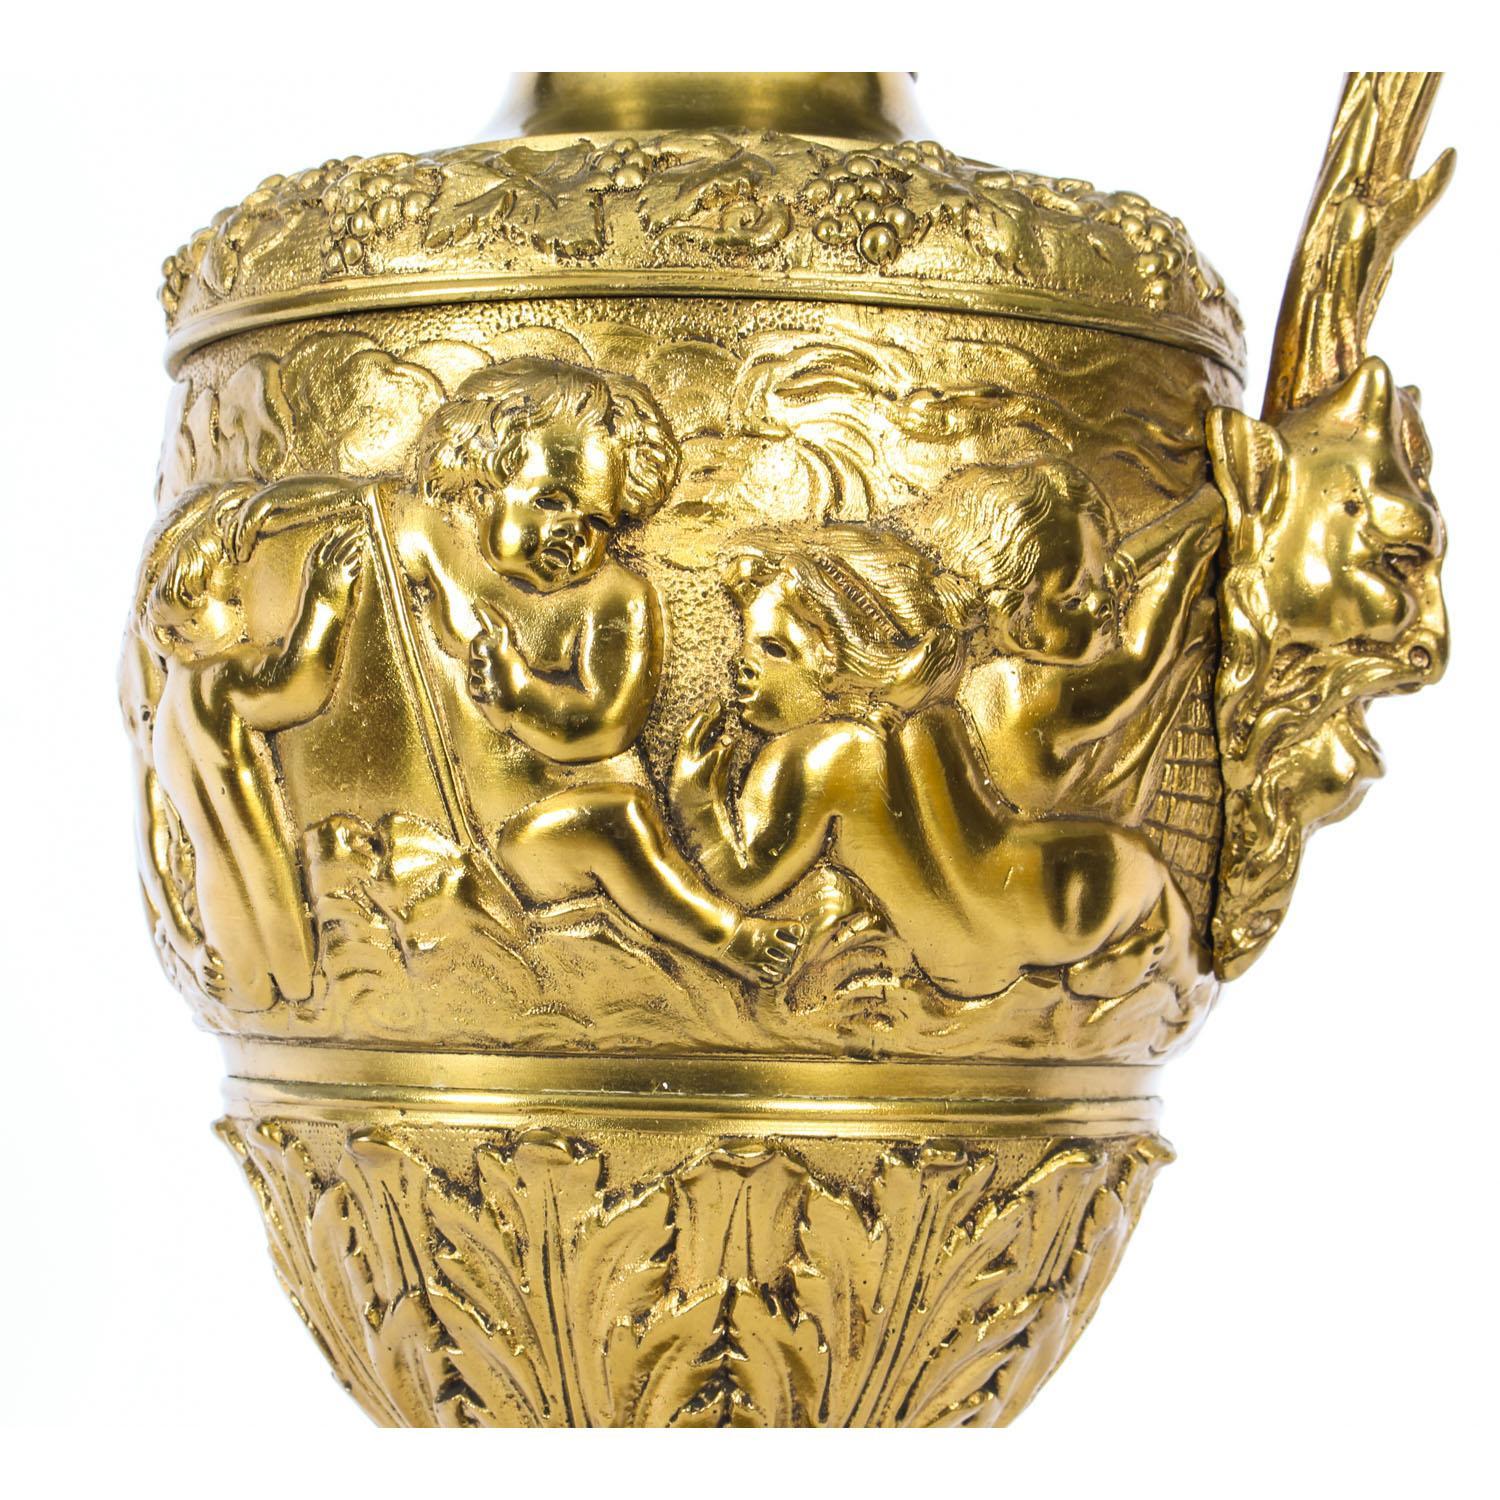 Antique Gilt Bronze Renaissance Revival Table Lamp, 19th Century For Sale 3